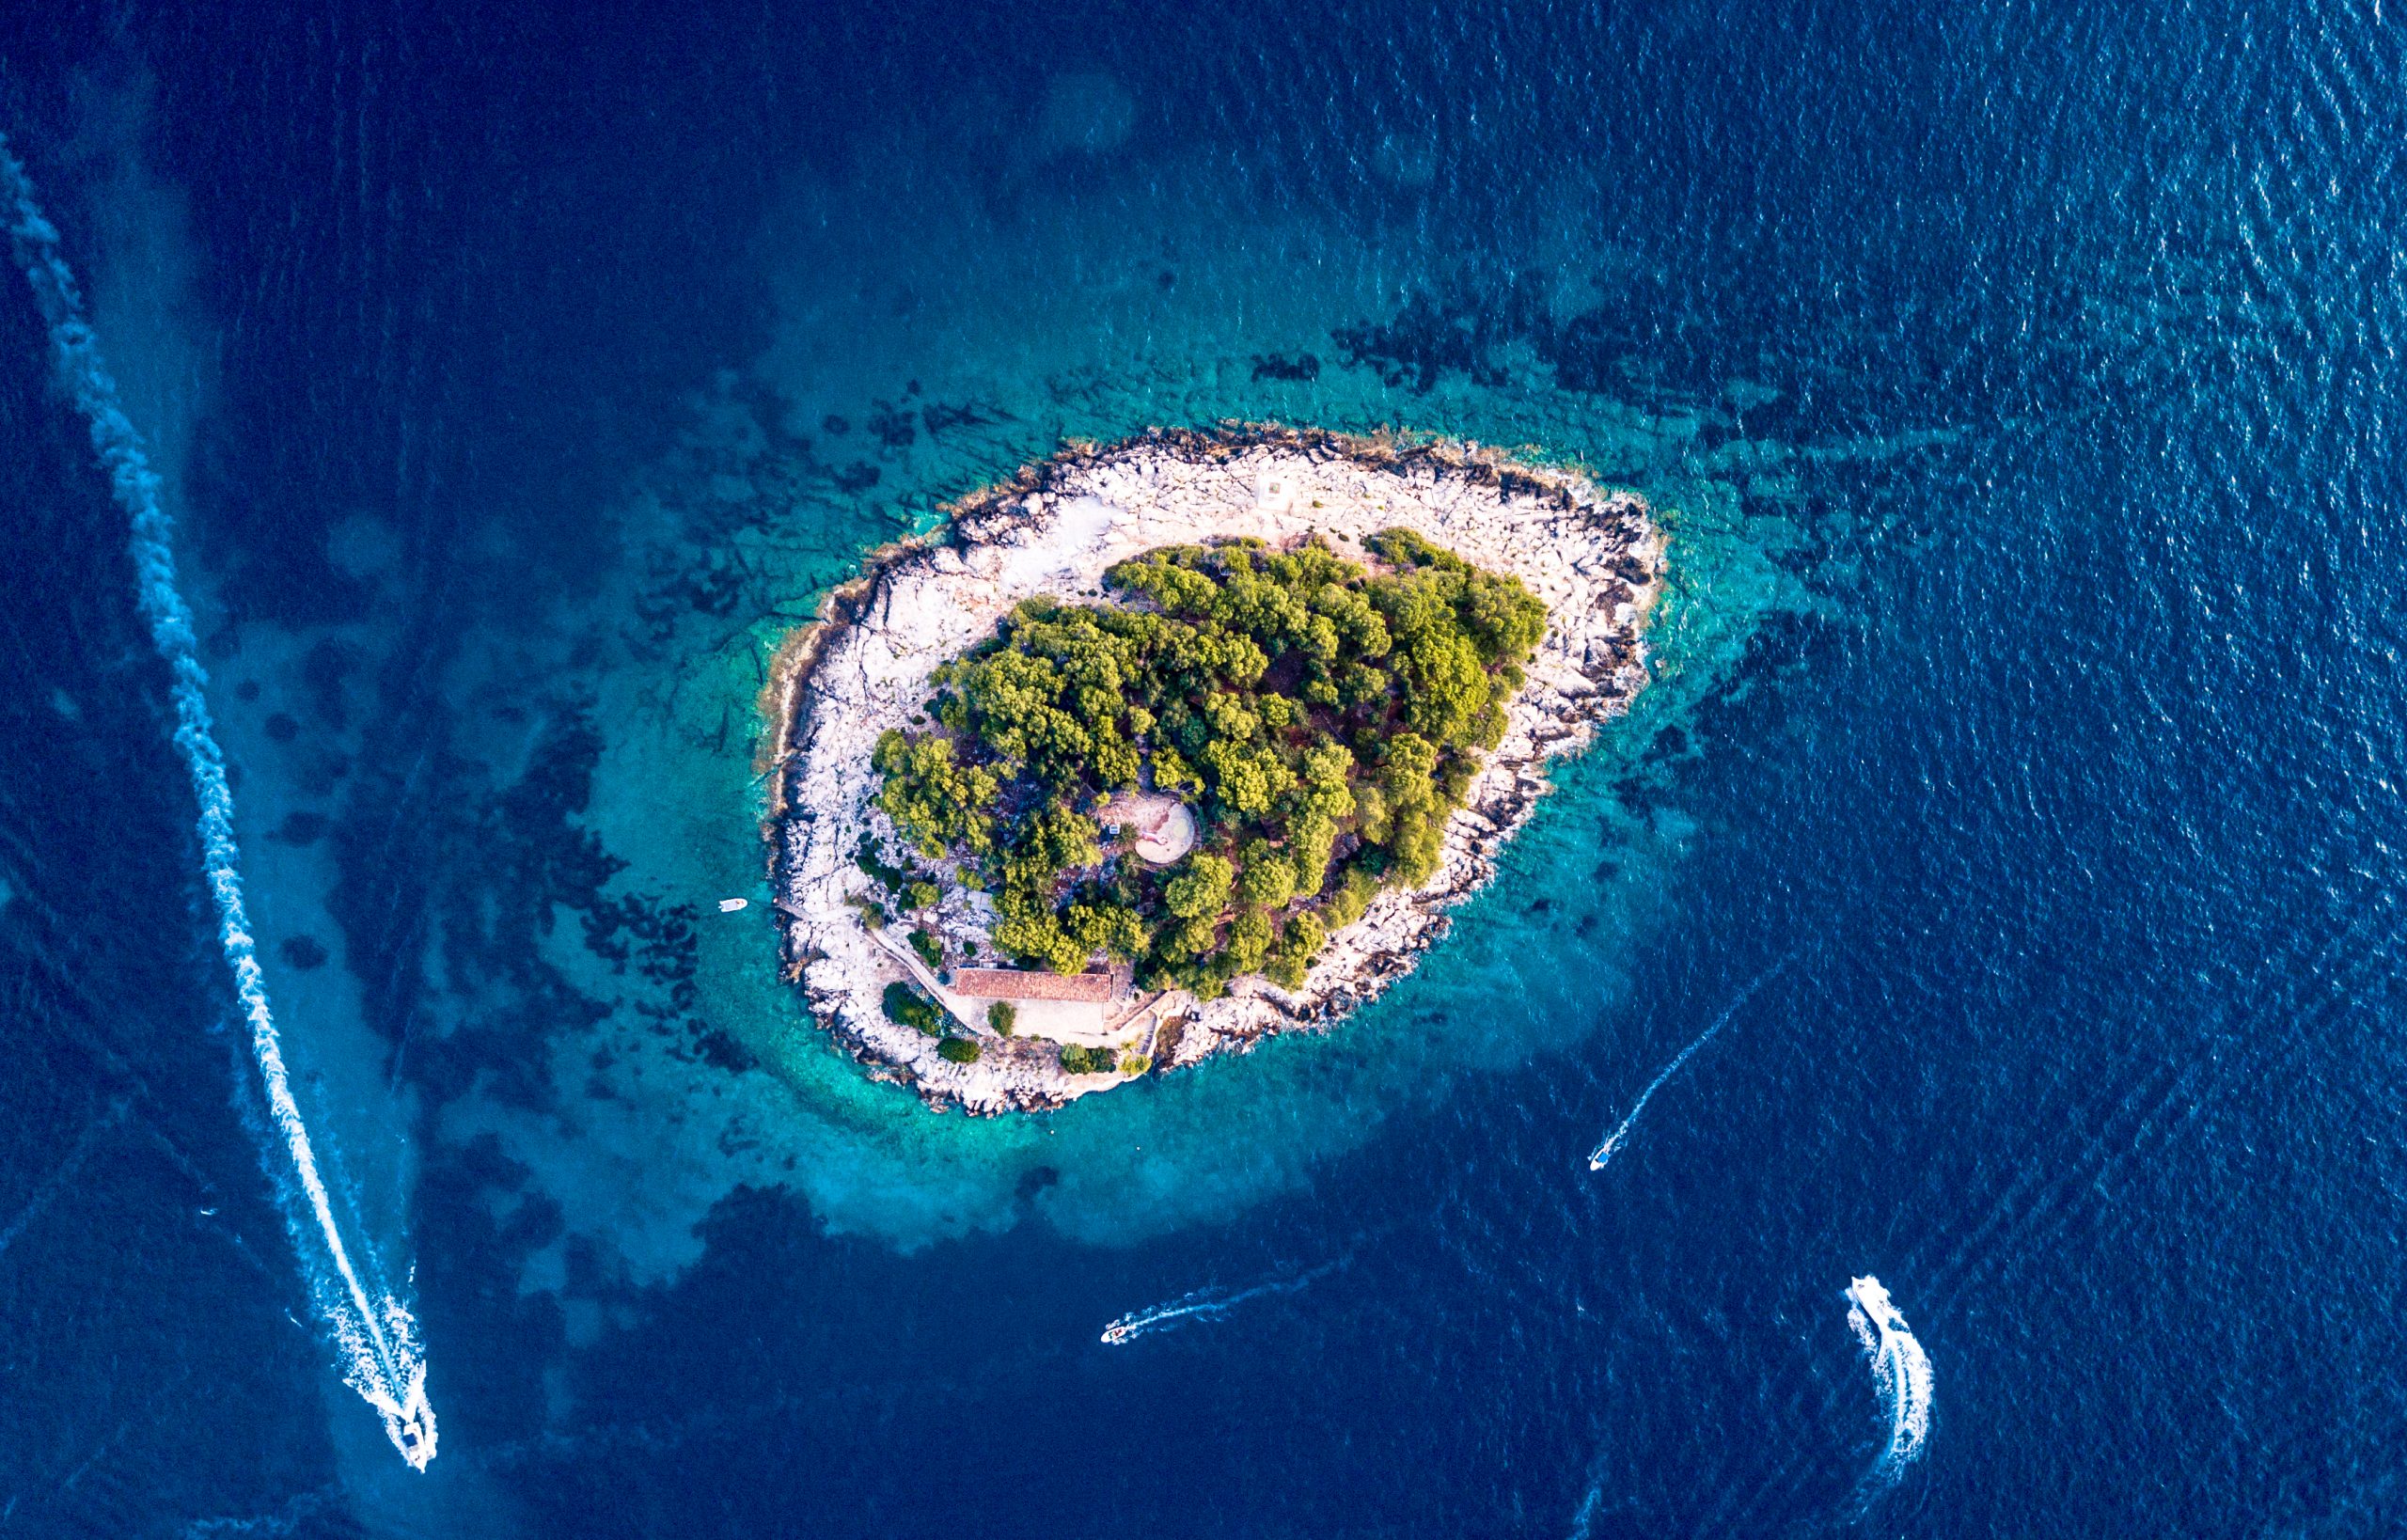 How To Visit Hvar Island